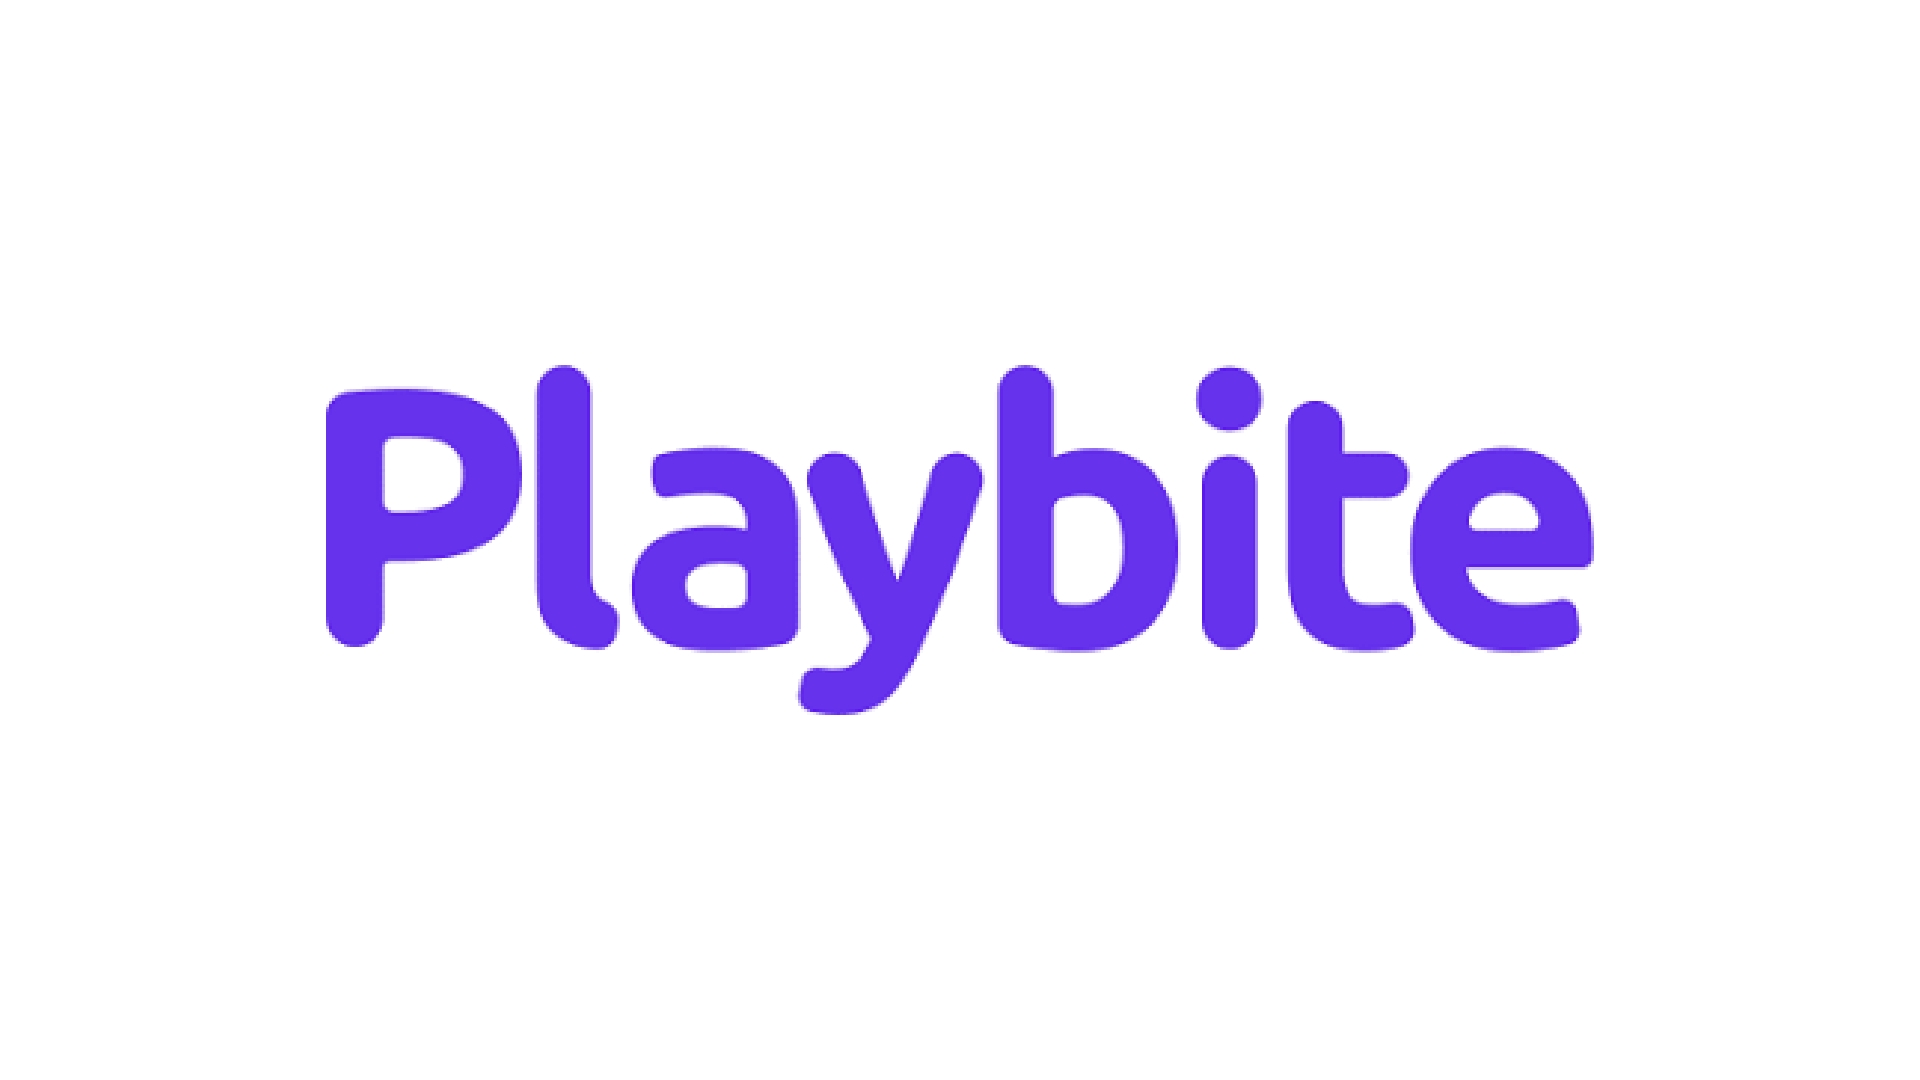 Playbite、モバイルゲーム向けのアーケードの魔法を復活させるために100万ドルを調達